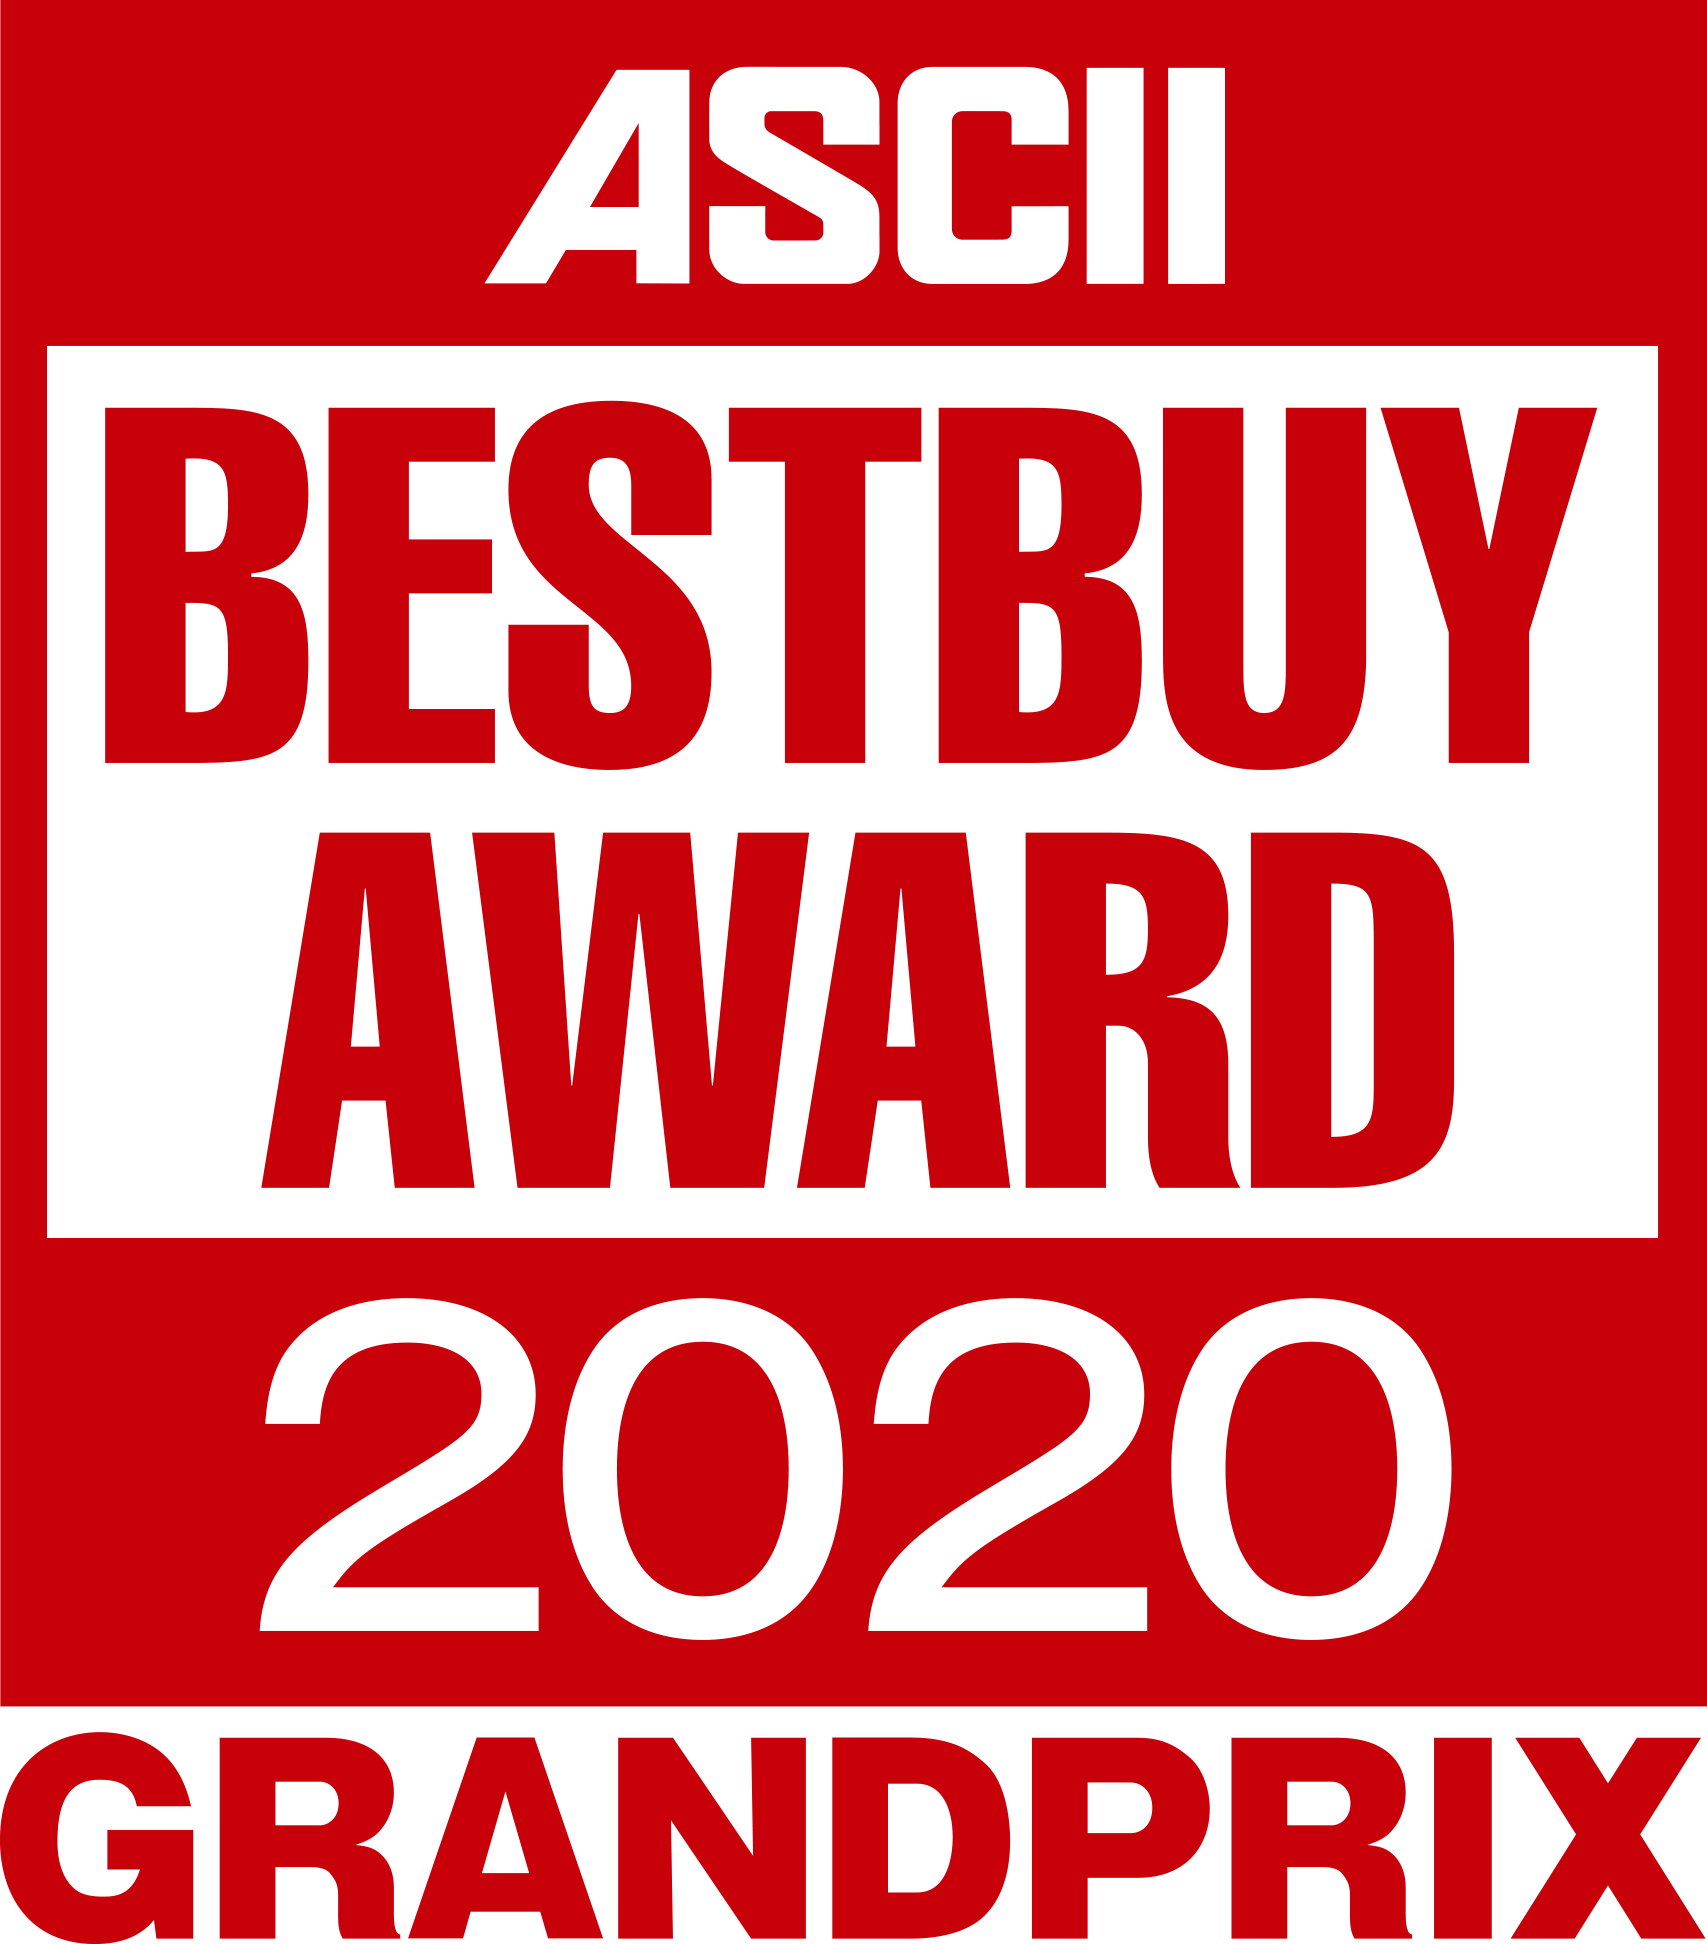 ASCII BESTBUY AWARD 2020